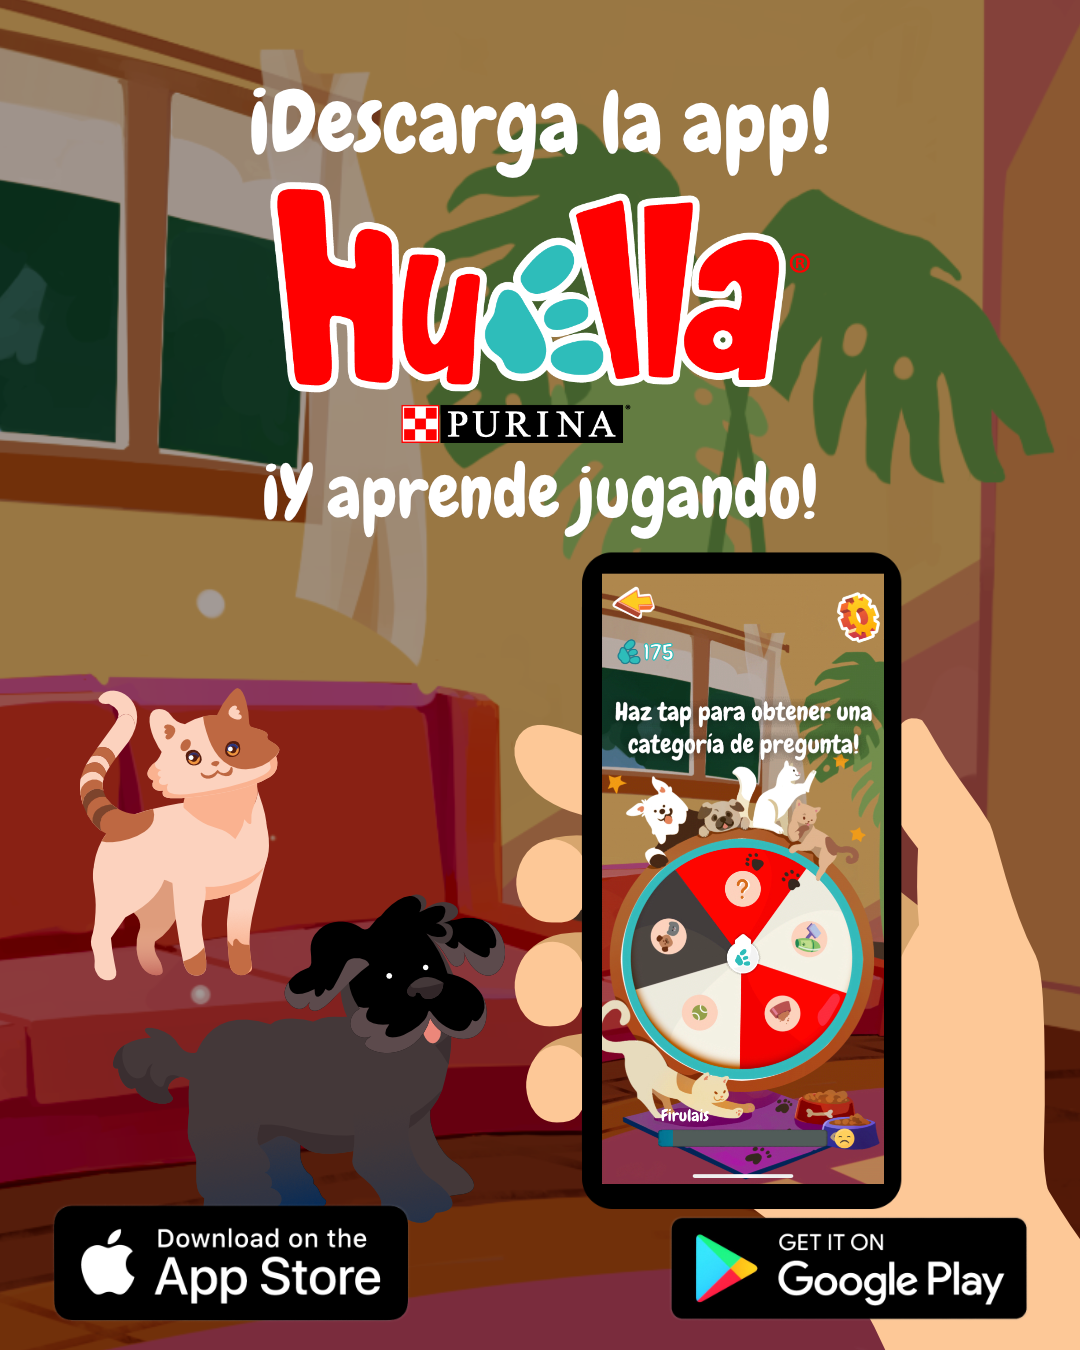 imagen promocional. donde aparecen un gato y perro. y celular mostrando los juegos de la aplicación